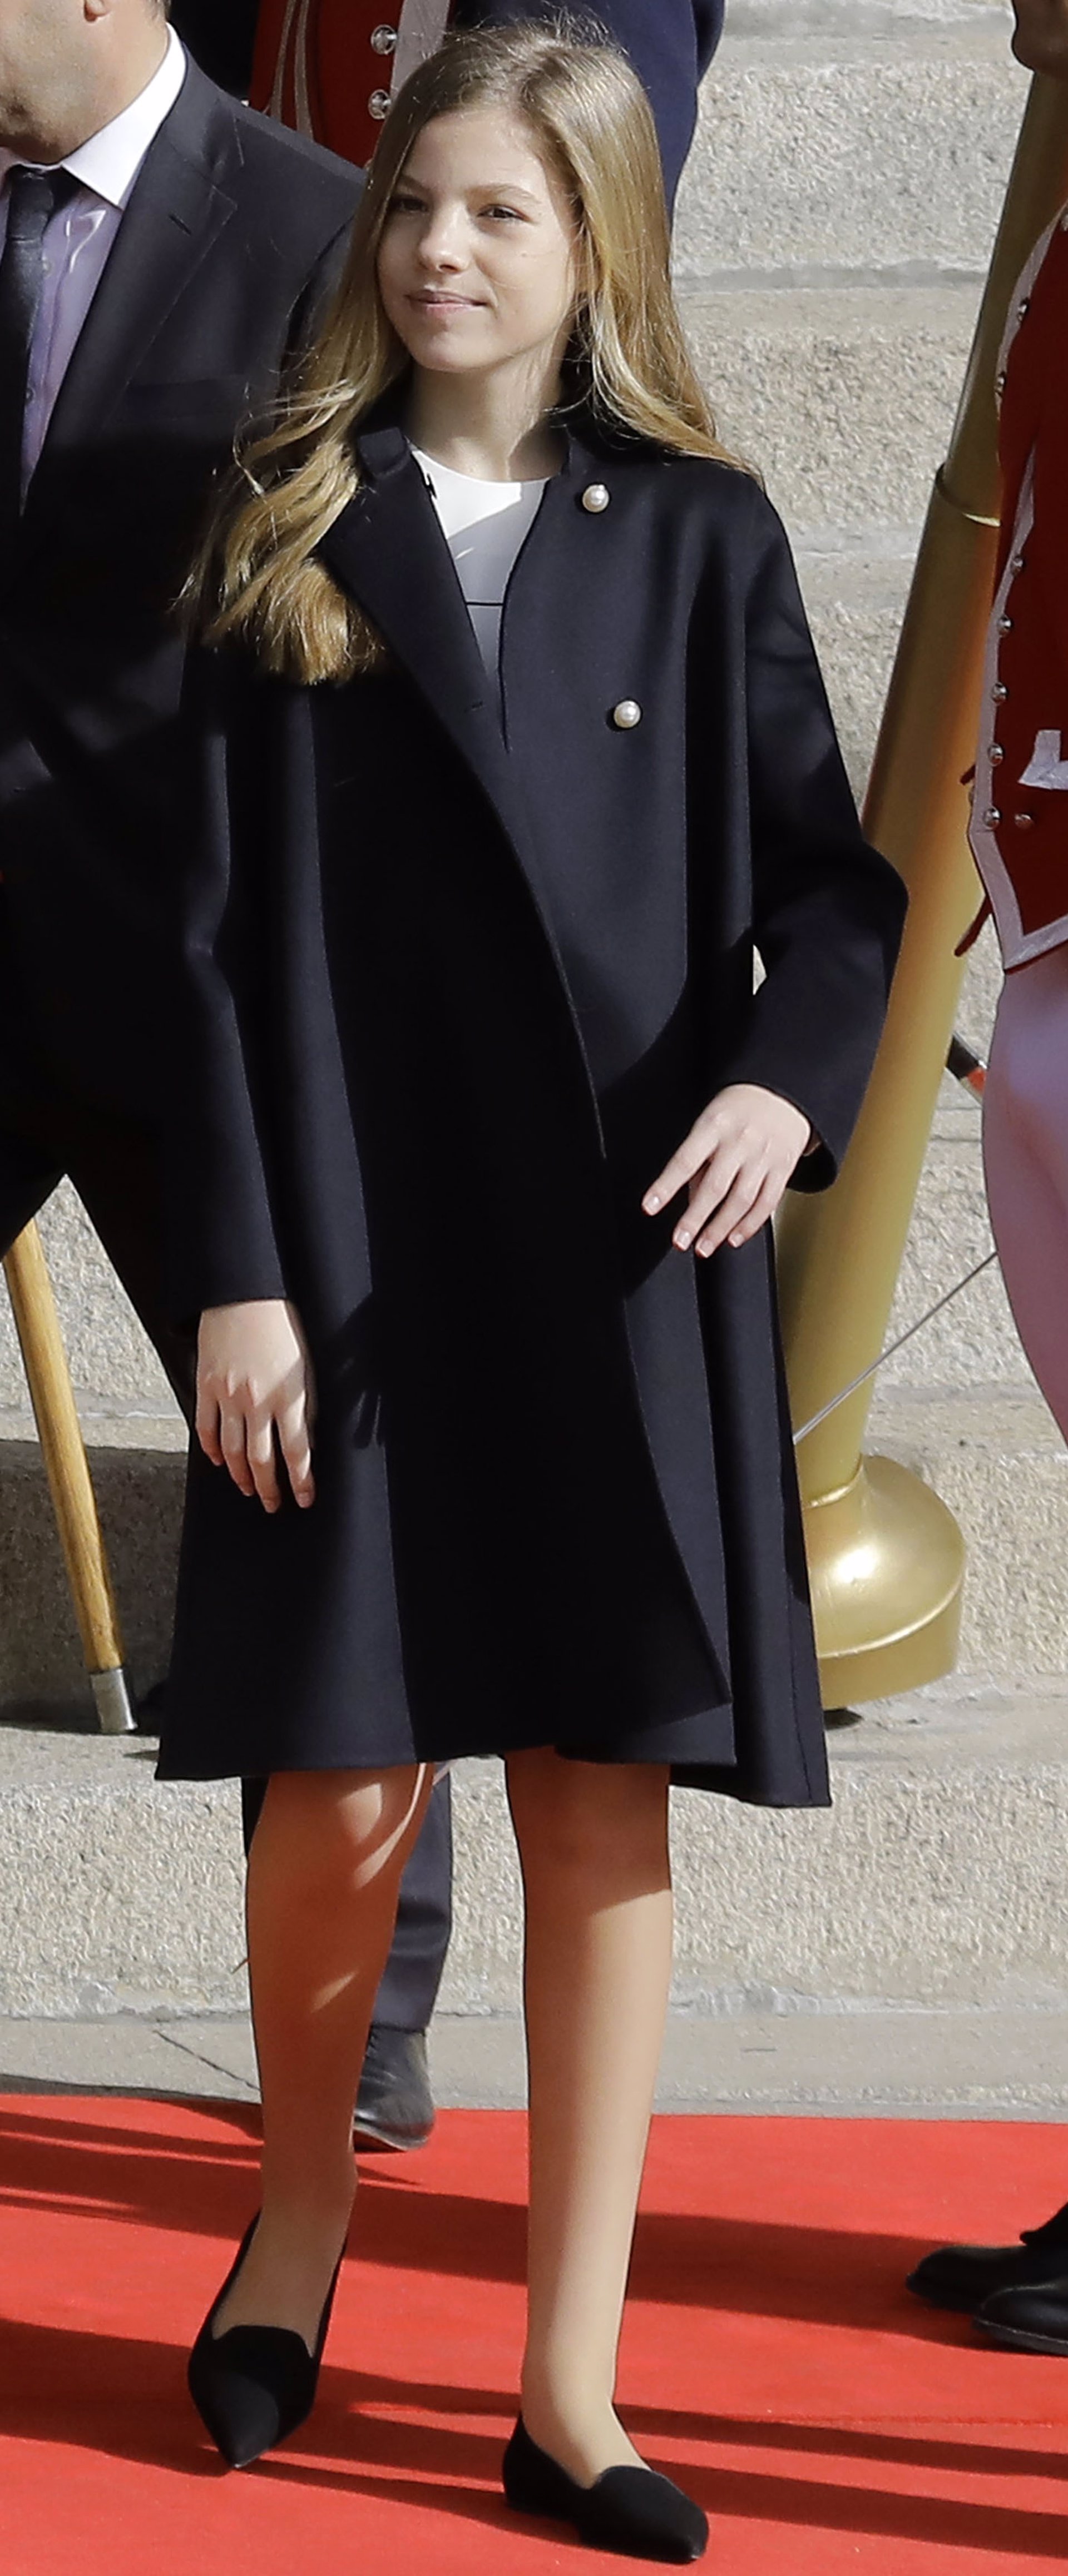 La Infanta Sofía lució en el acto de solemne apertura de Las Cortes el modelo ella de PrettyBallerinas de punta afilada en ante negro